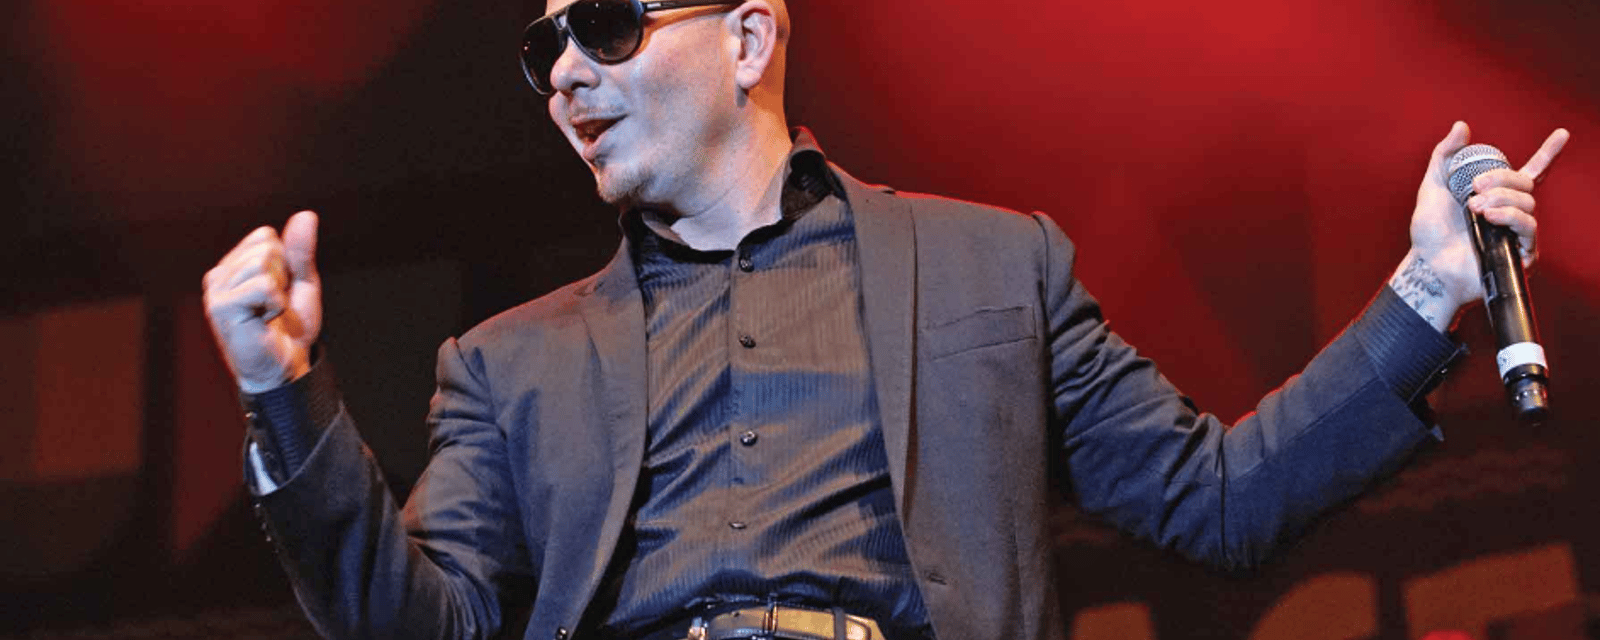 Le spectacle de Pitbull à Montréal dans le cadre du Grand Prix est annulé à la dernière minute